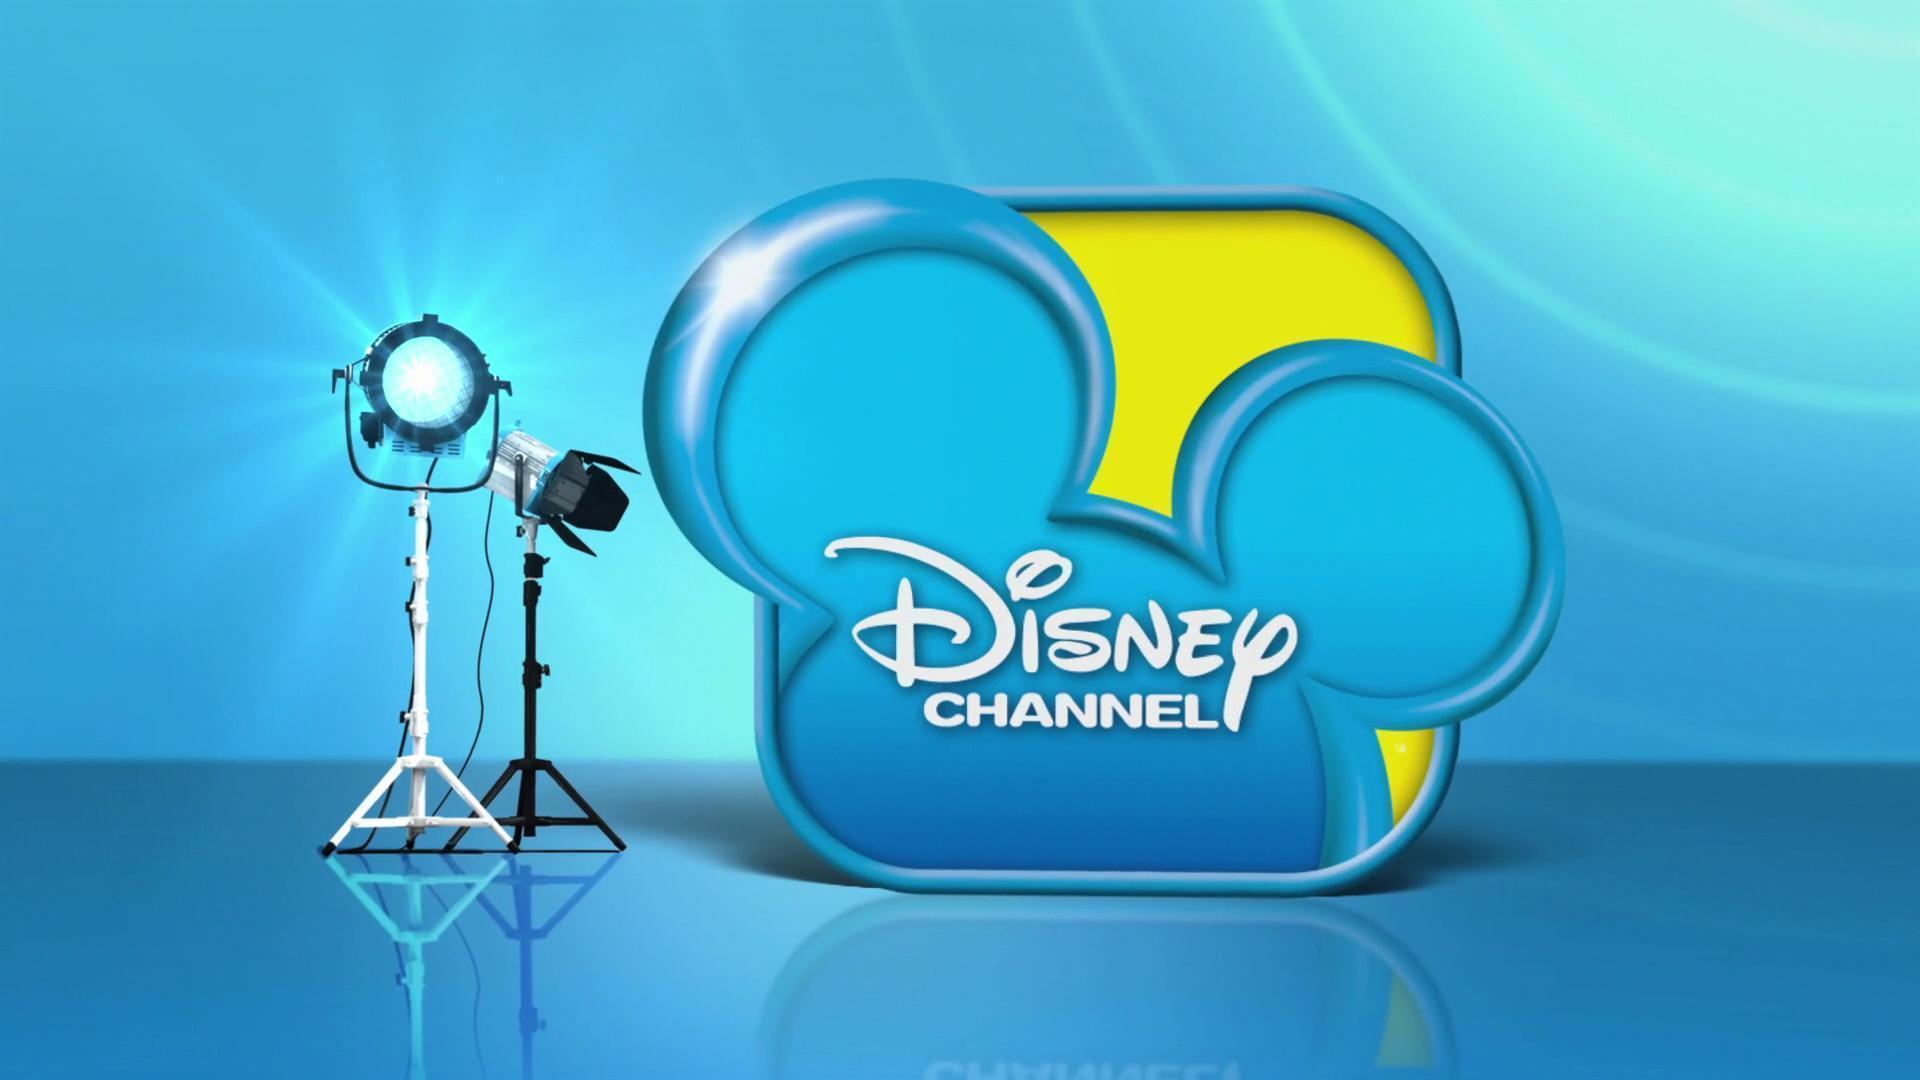 Disney Channel HD Logo - Disney Channel Wallpapers - Wallpaper Cave